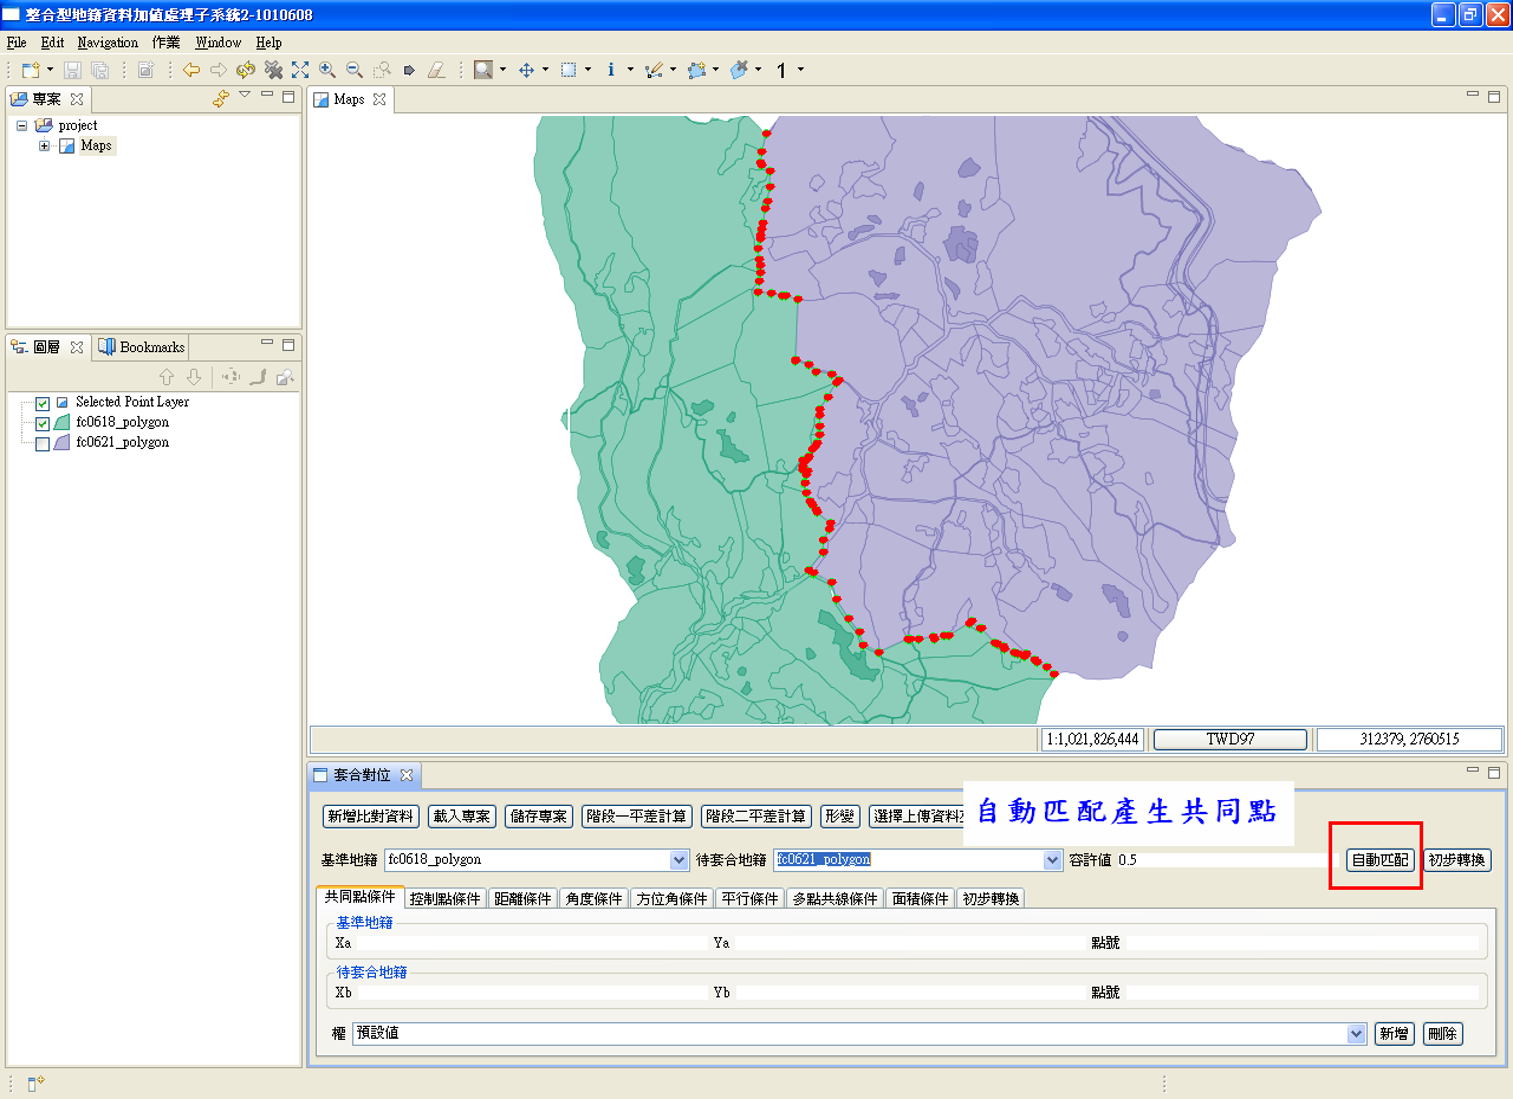 圖解法地籍圖數值化成果土地複丈電腦套圖作業系統畫面